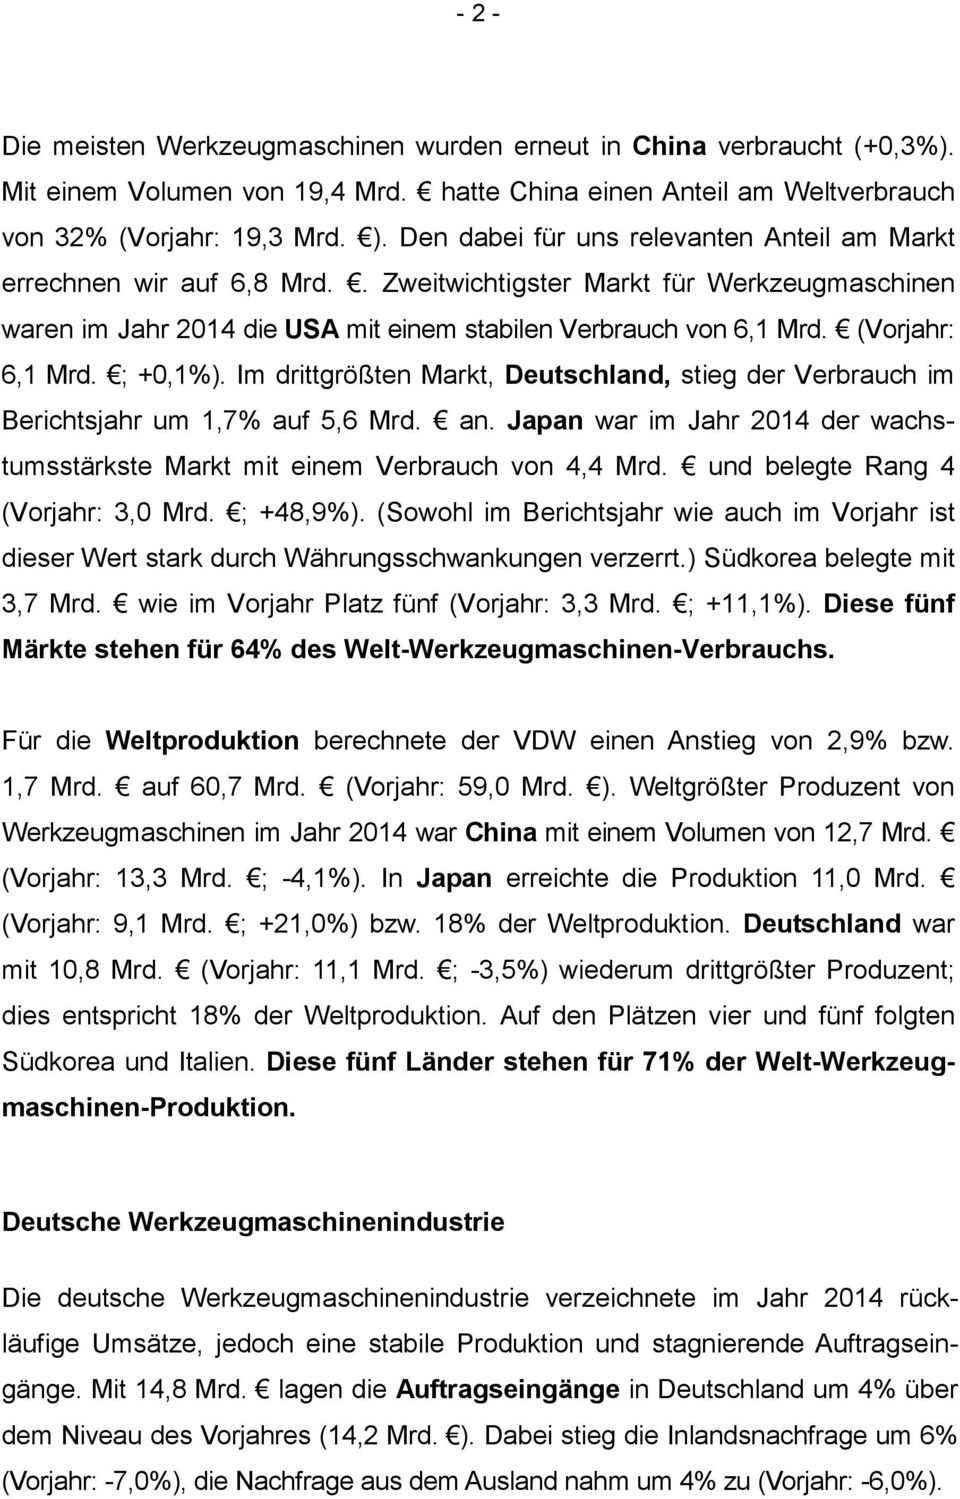 (Vorjahr: 6,1 Mrd. ; +0,1%). Im drittgrößten Markt, Deutschland, stieg der Verbrauch im Berichtsjahr um 1,7% auf 5,6 Mrd. an.